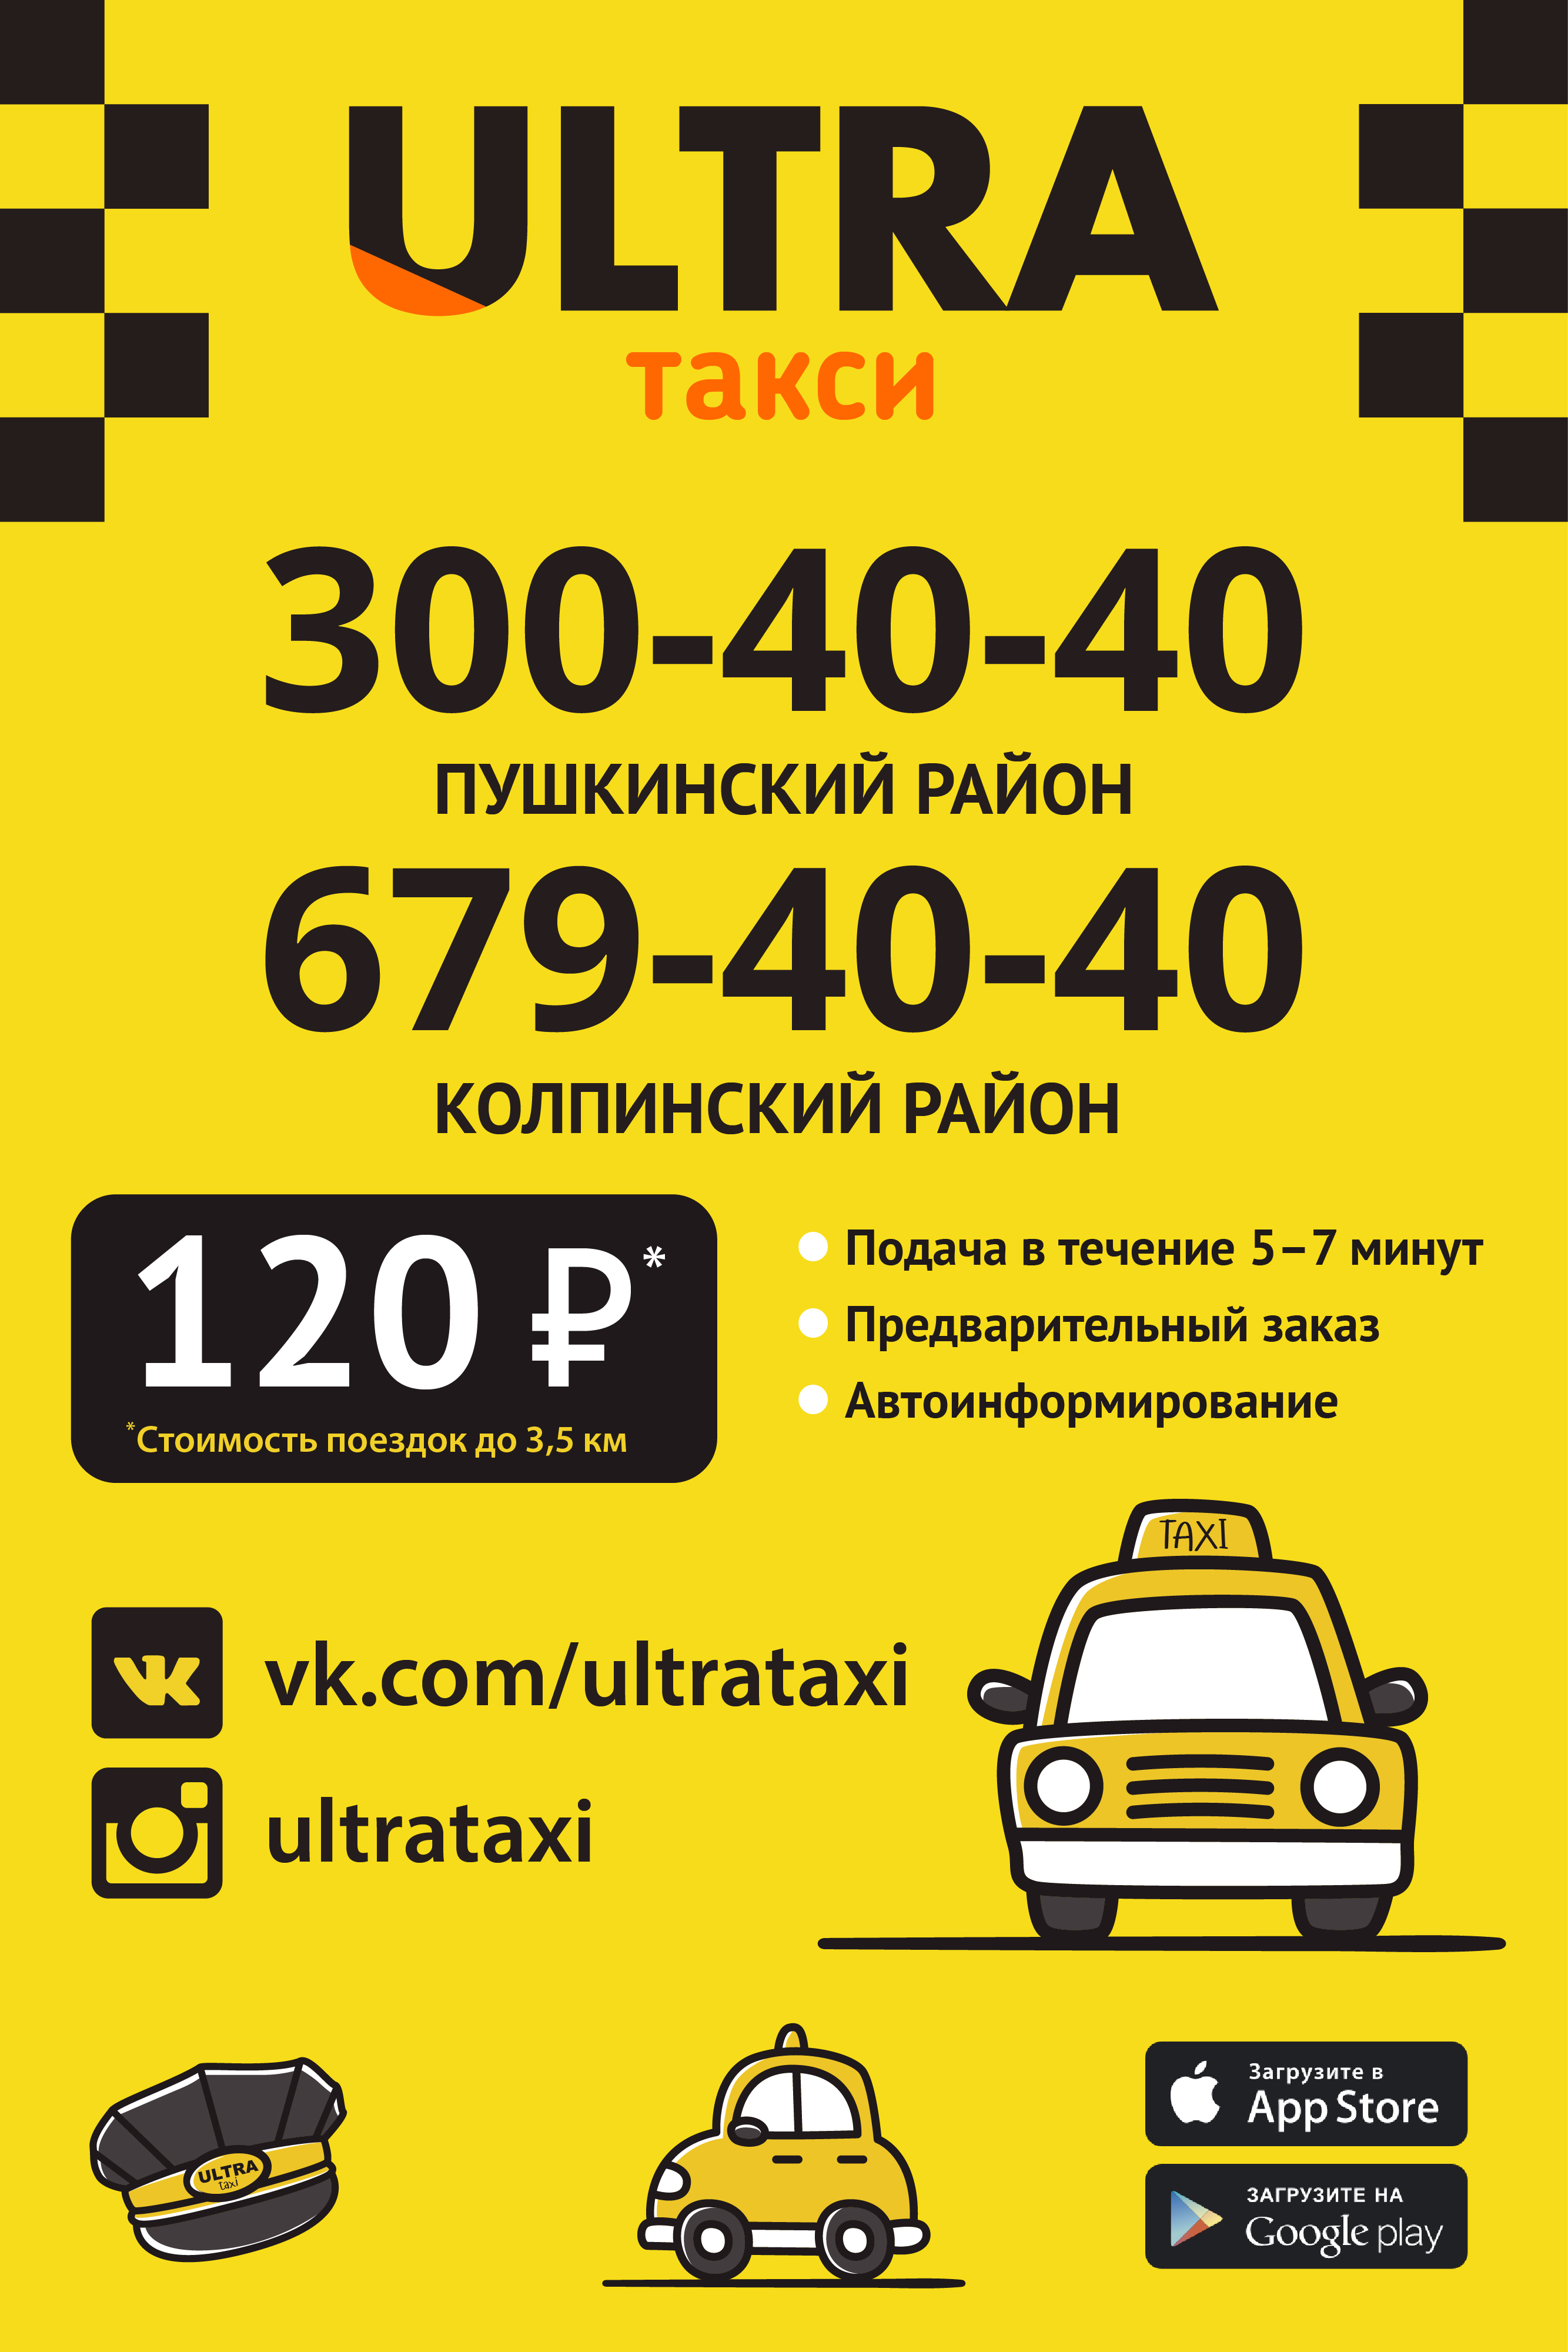 Нужны телефоны такси